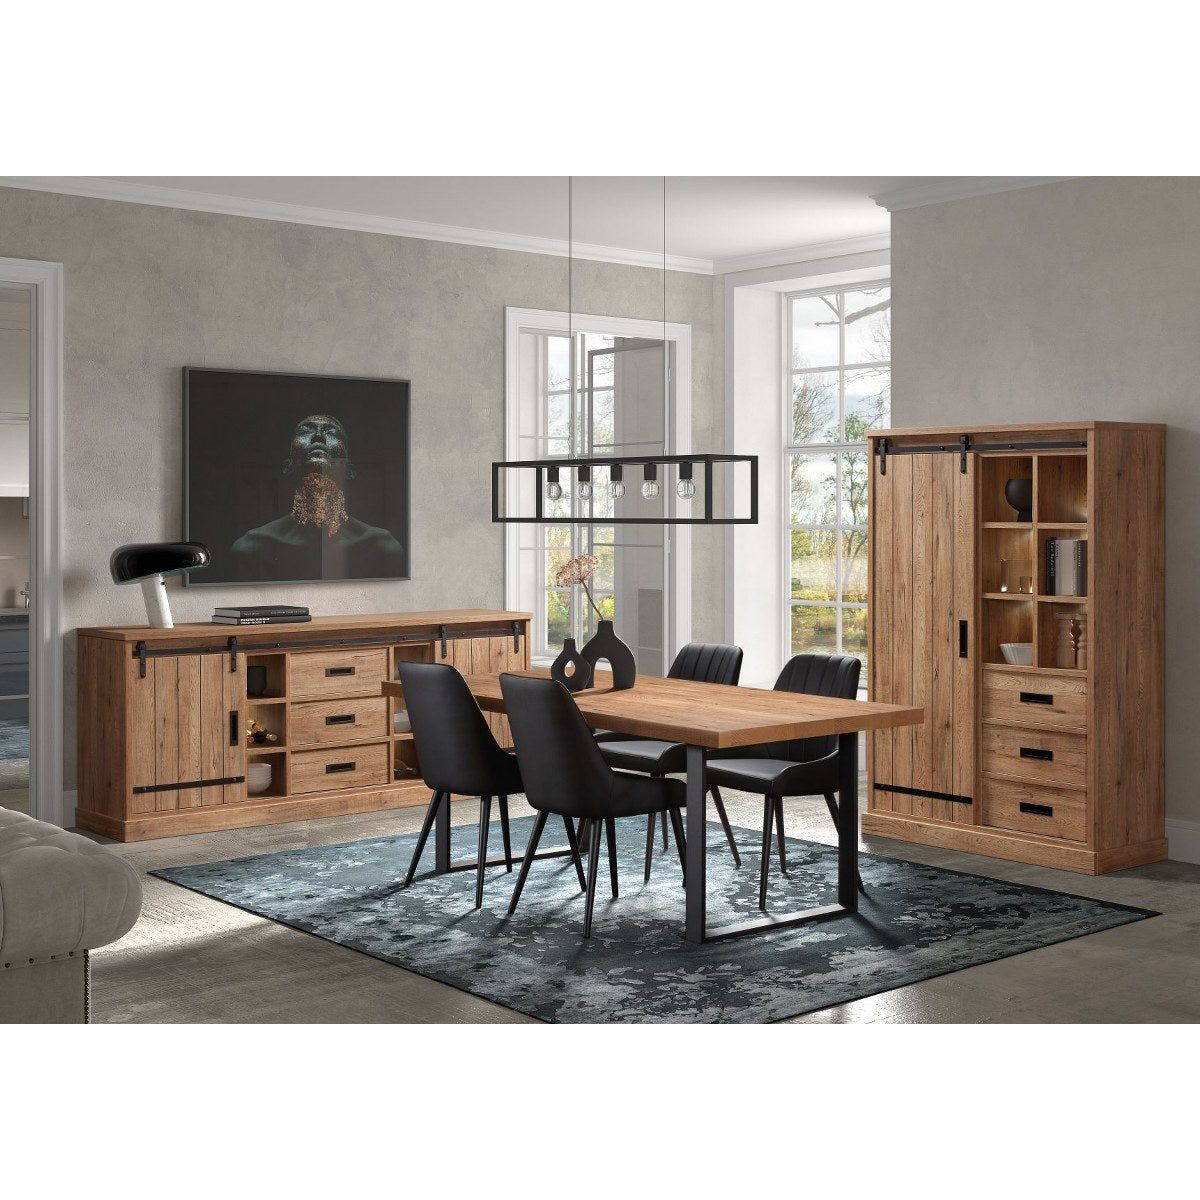 Dresser | Furniture series Albert | brown, natural, black | 225